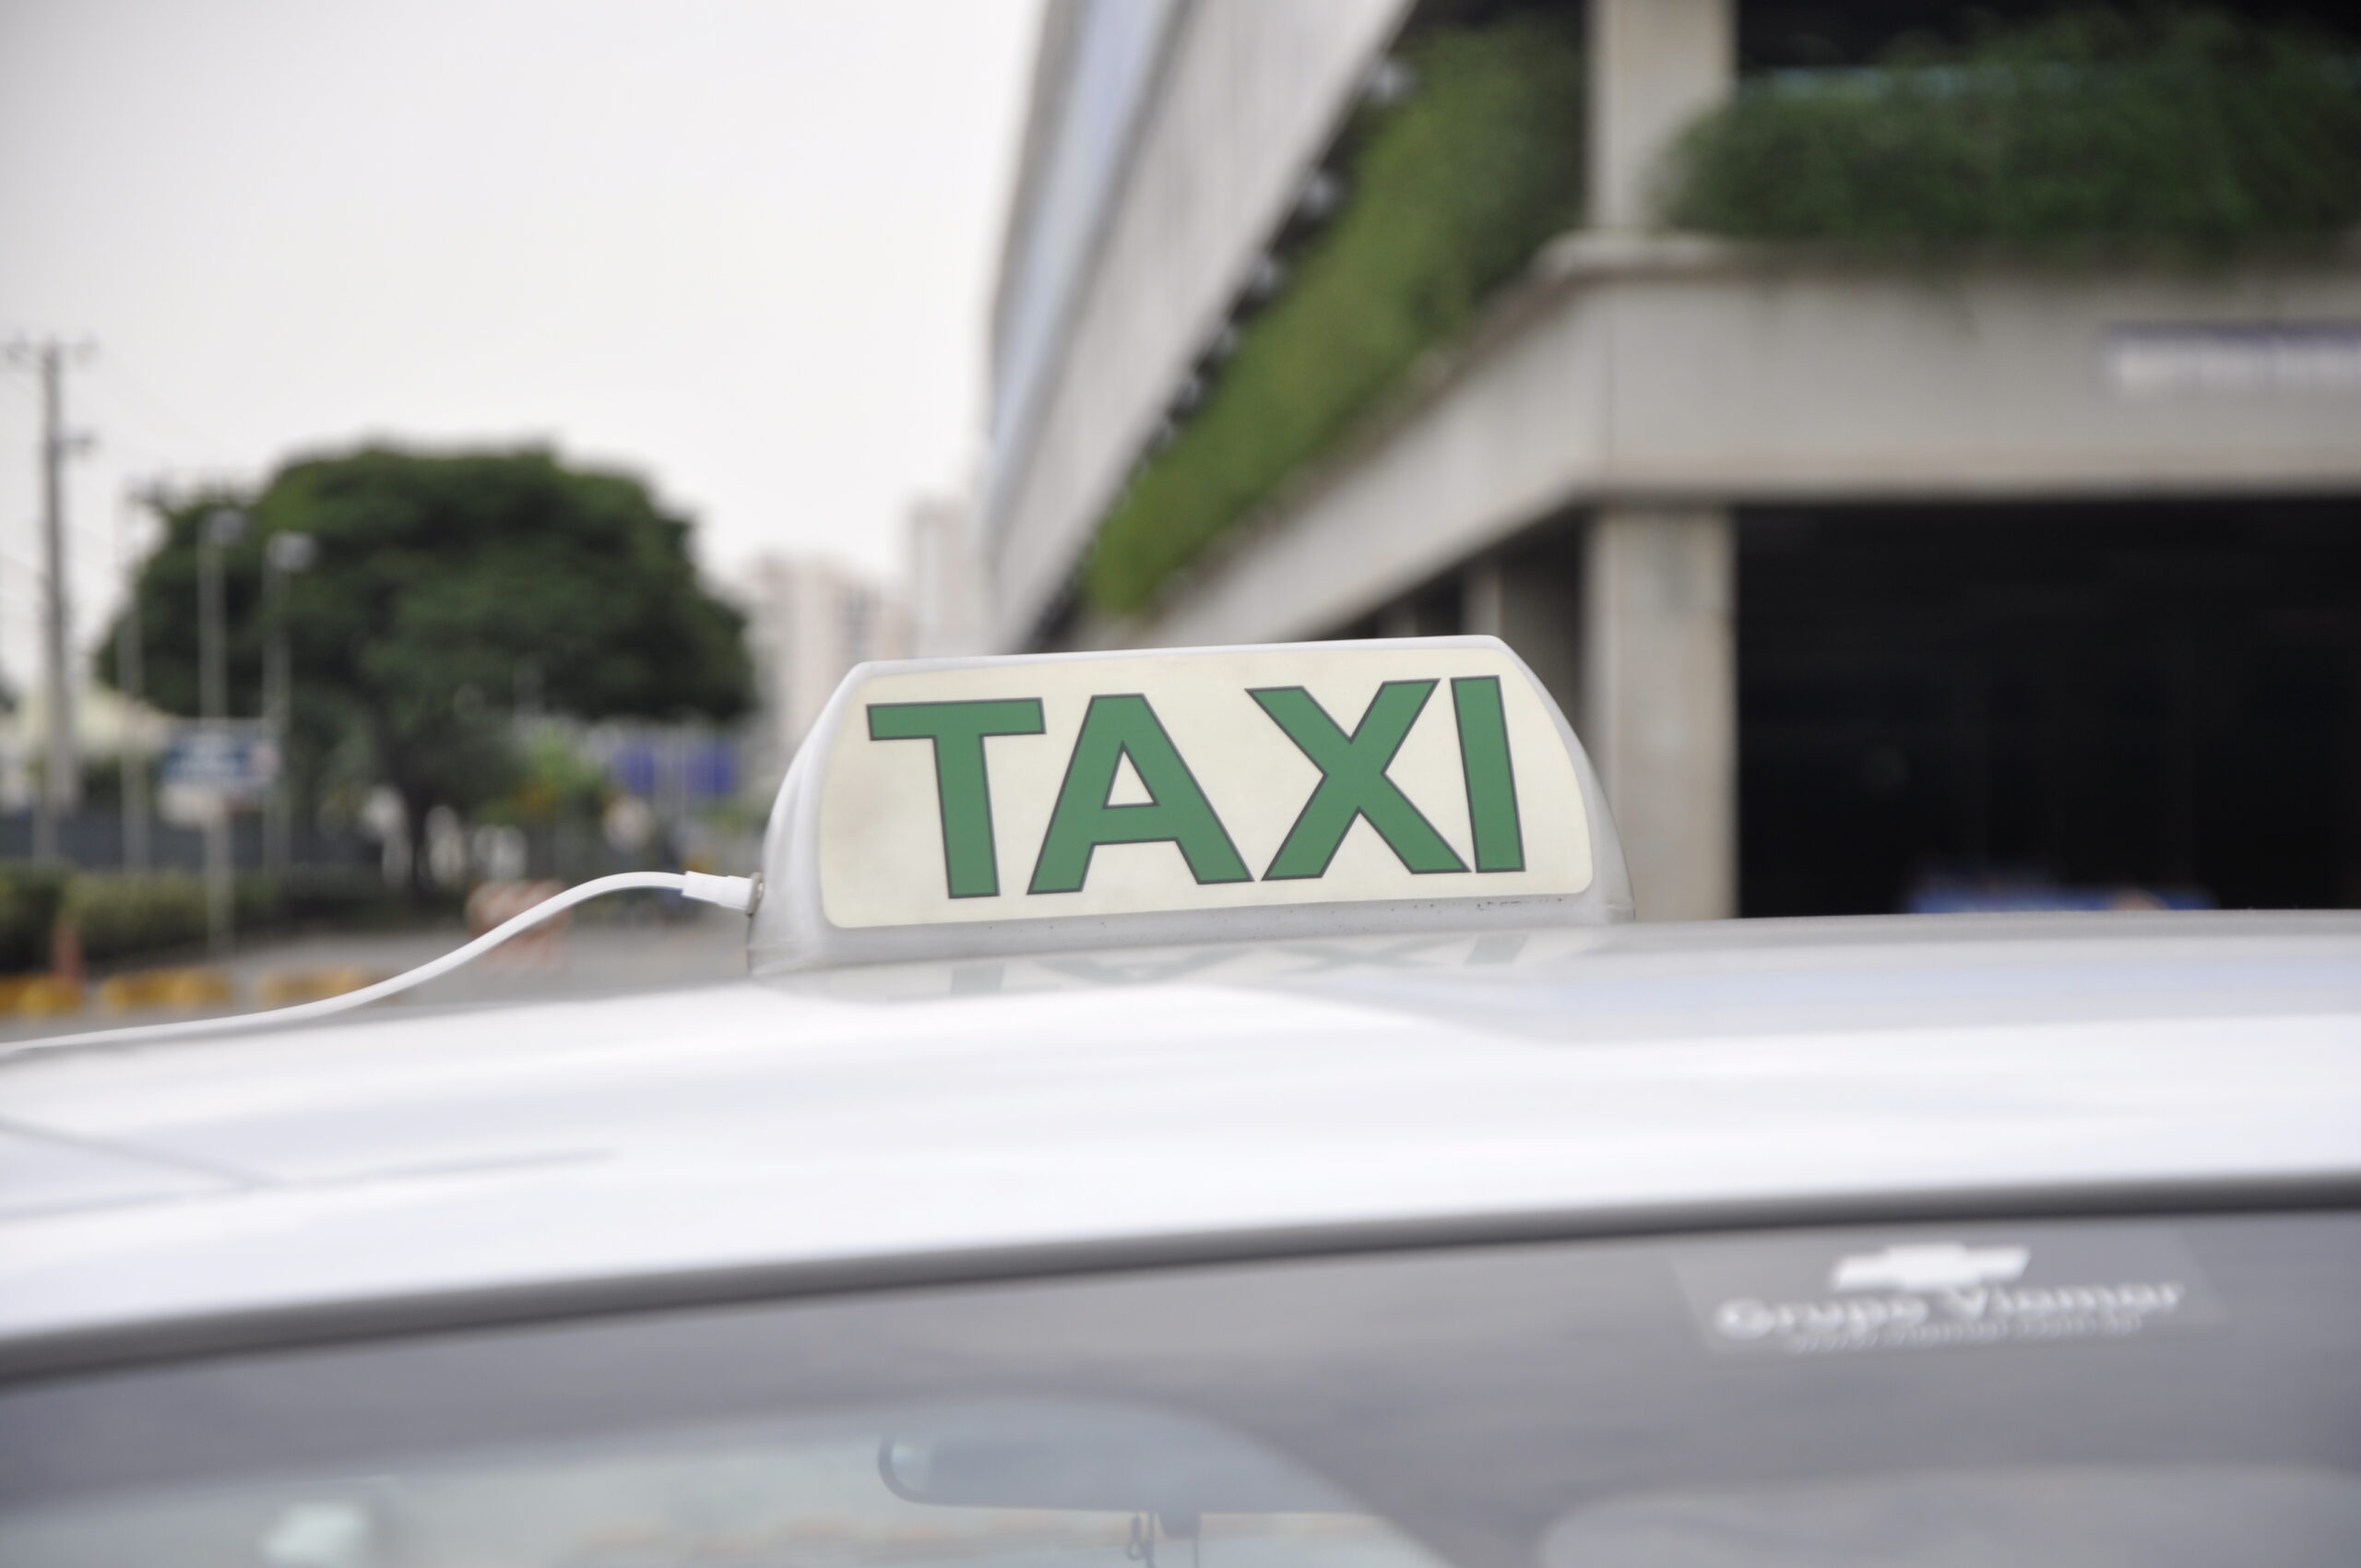 Cade arquiva processo contra aplicativos de táxi em três cidades